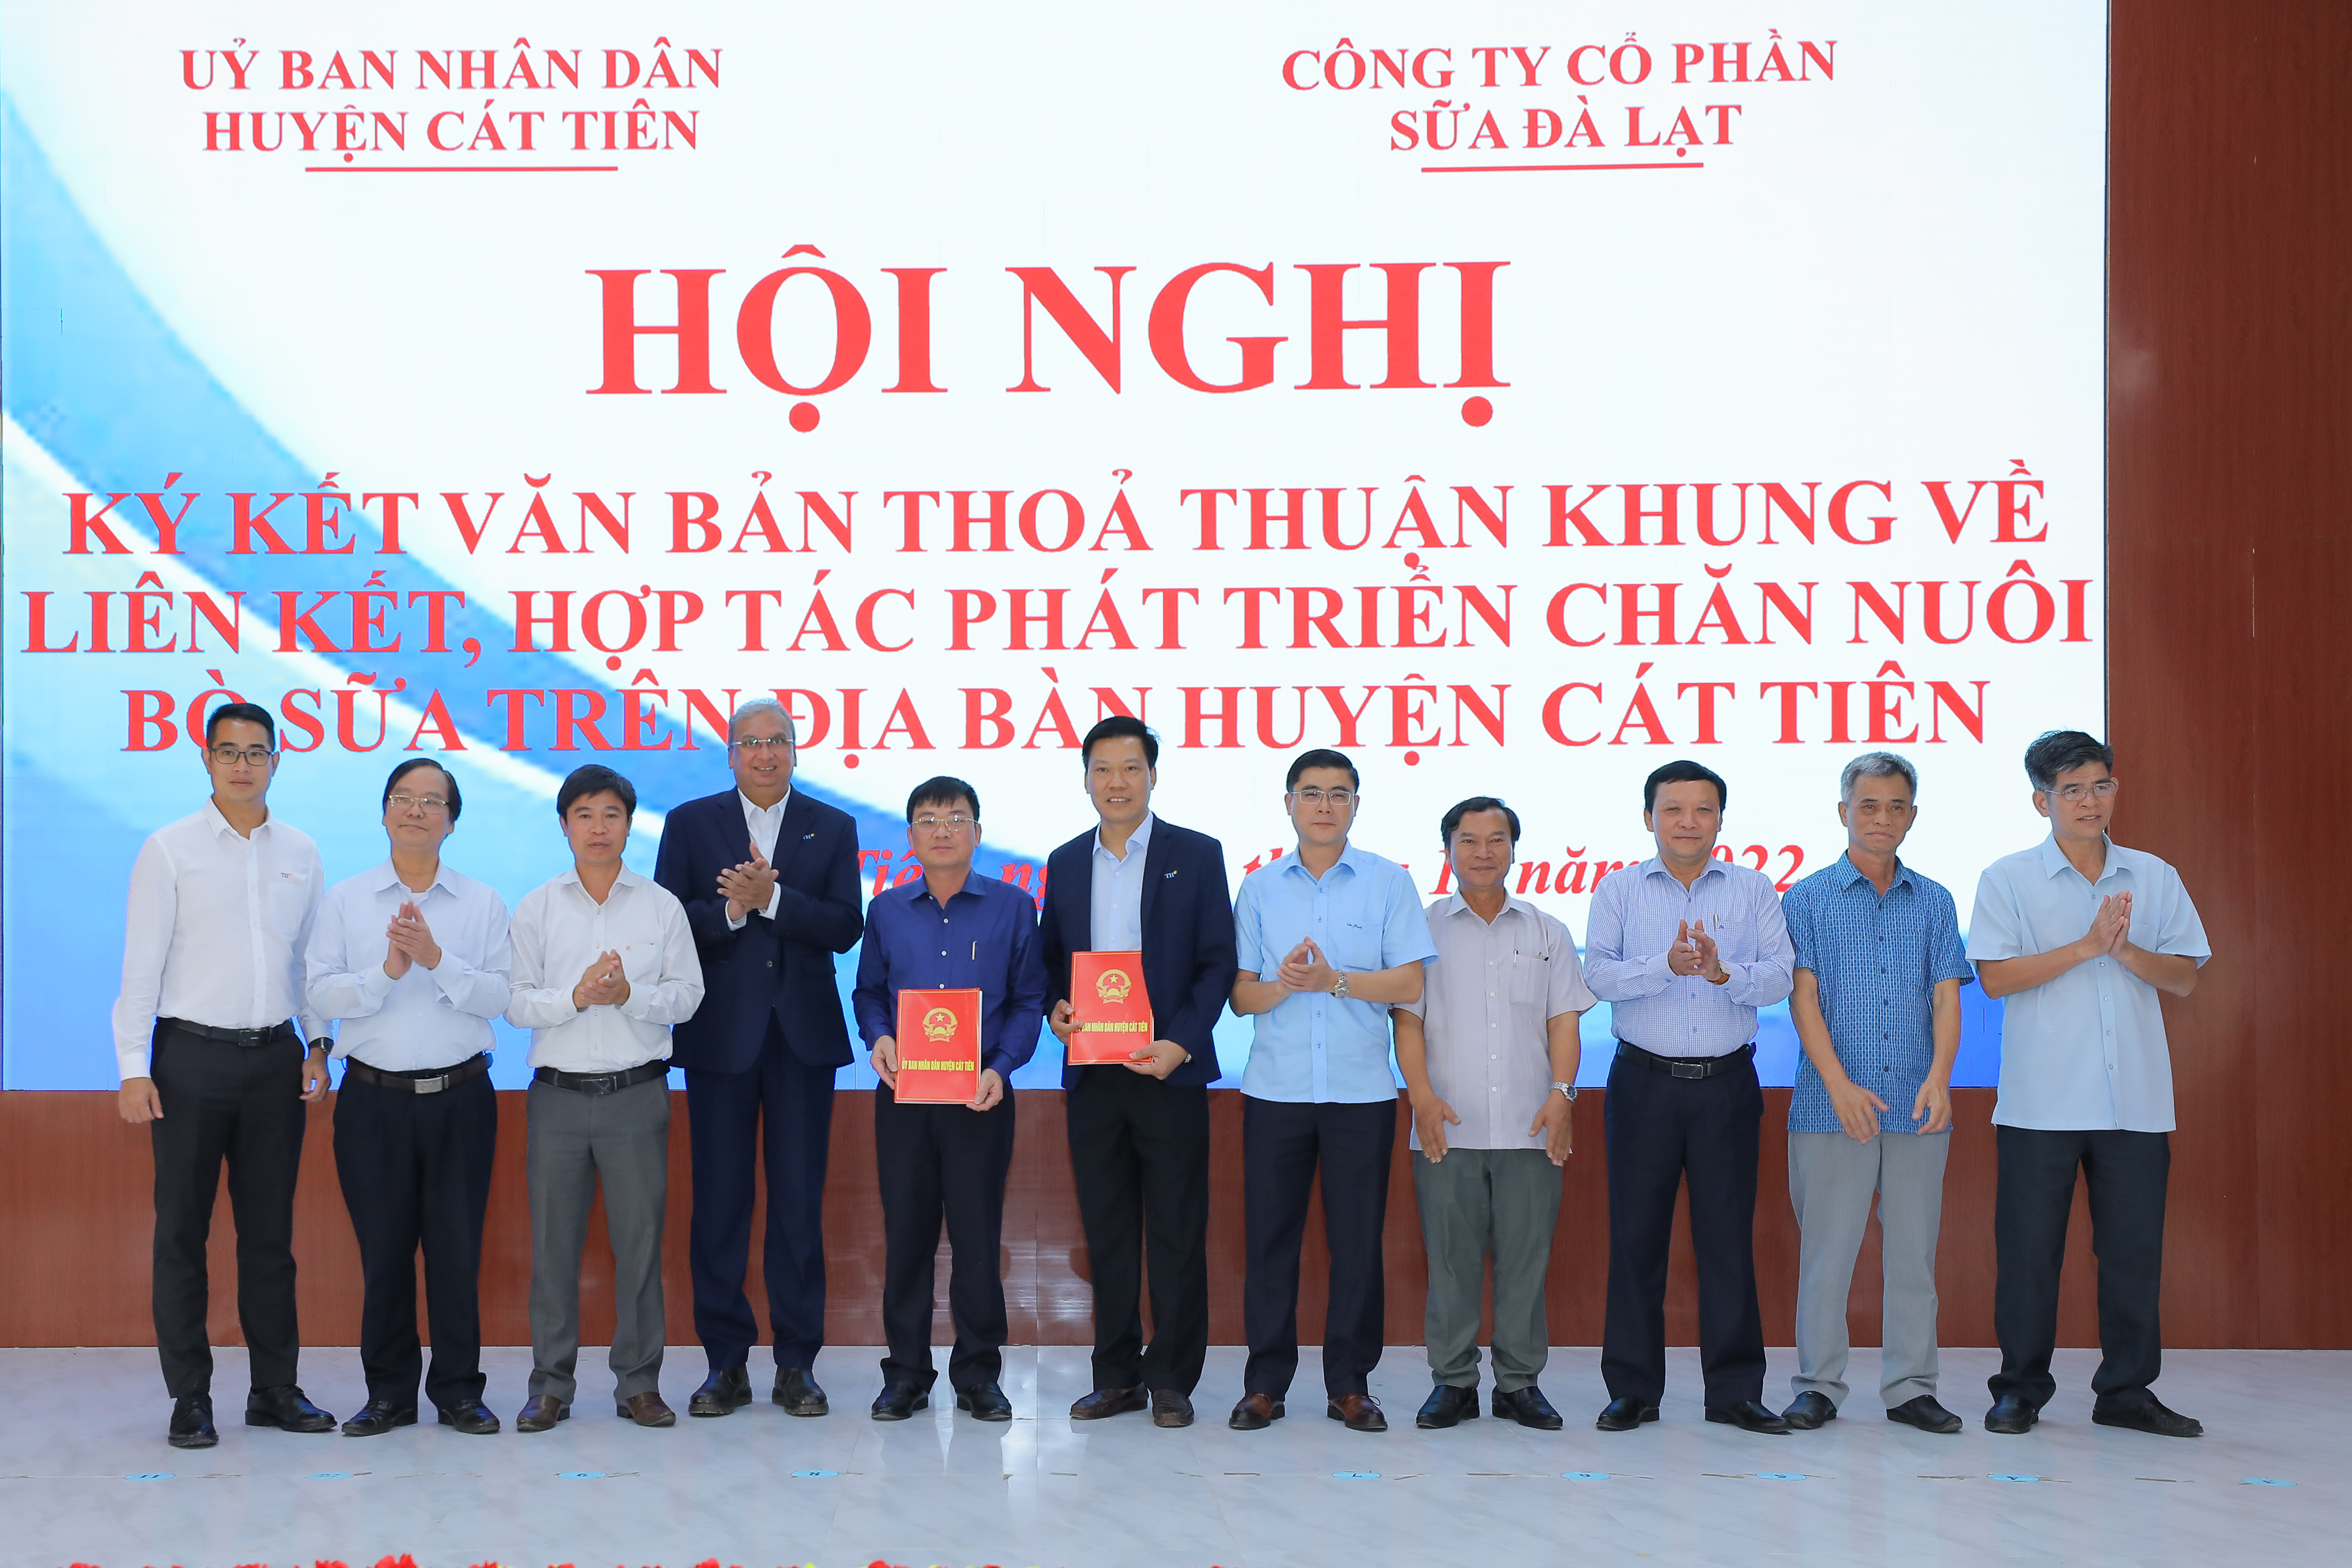 Hội nghị ký kết văn bản thỏa thuận khung về liên kết hợp tác phát triển bò sữa trên địa bàn huyện Cát Tiên (Lâm Đồng) với sự tham gia của Dalatmilk và Tập đoàn TH.